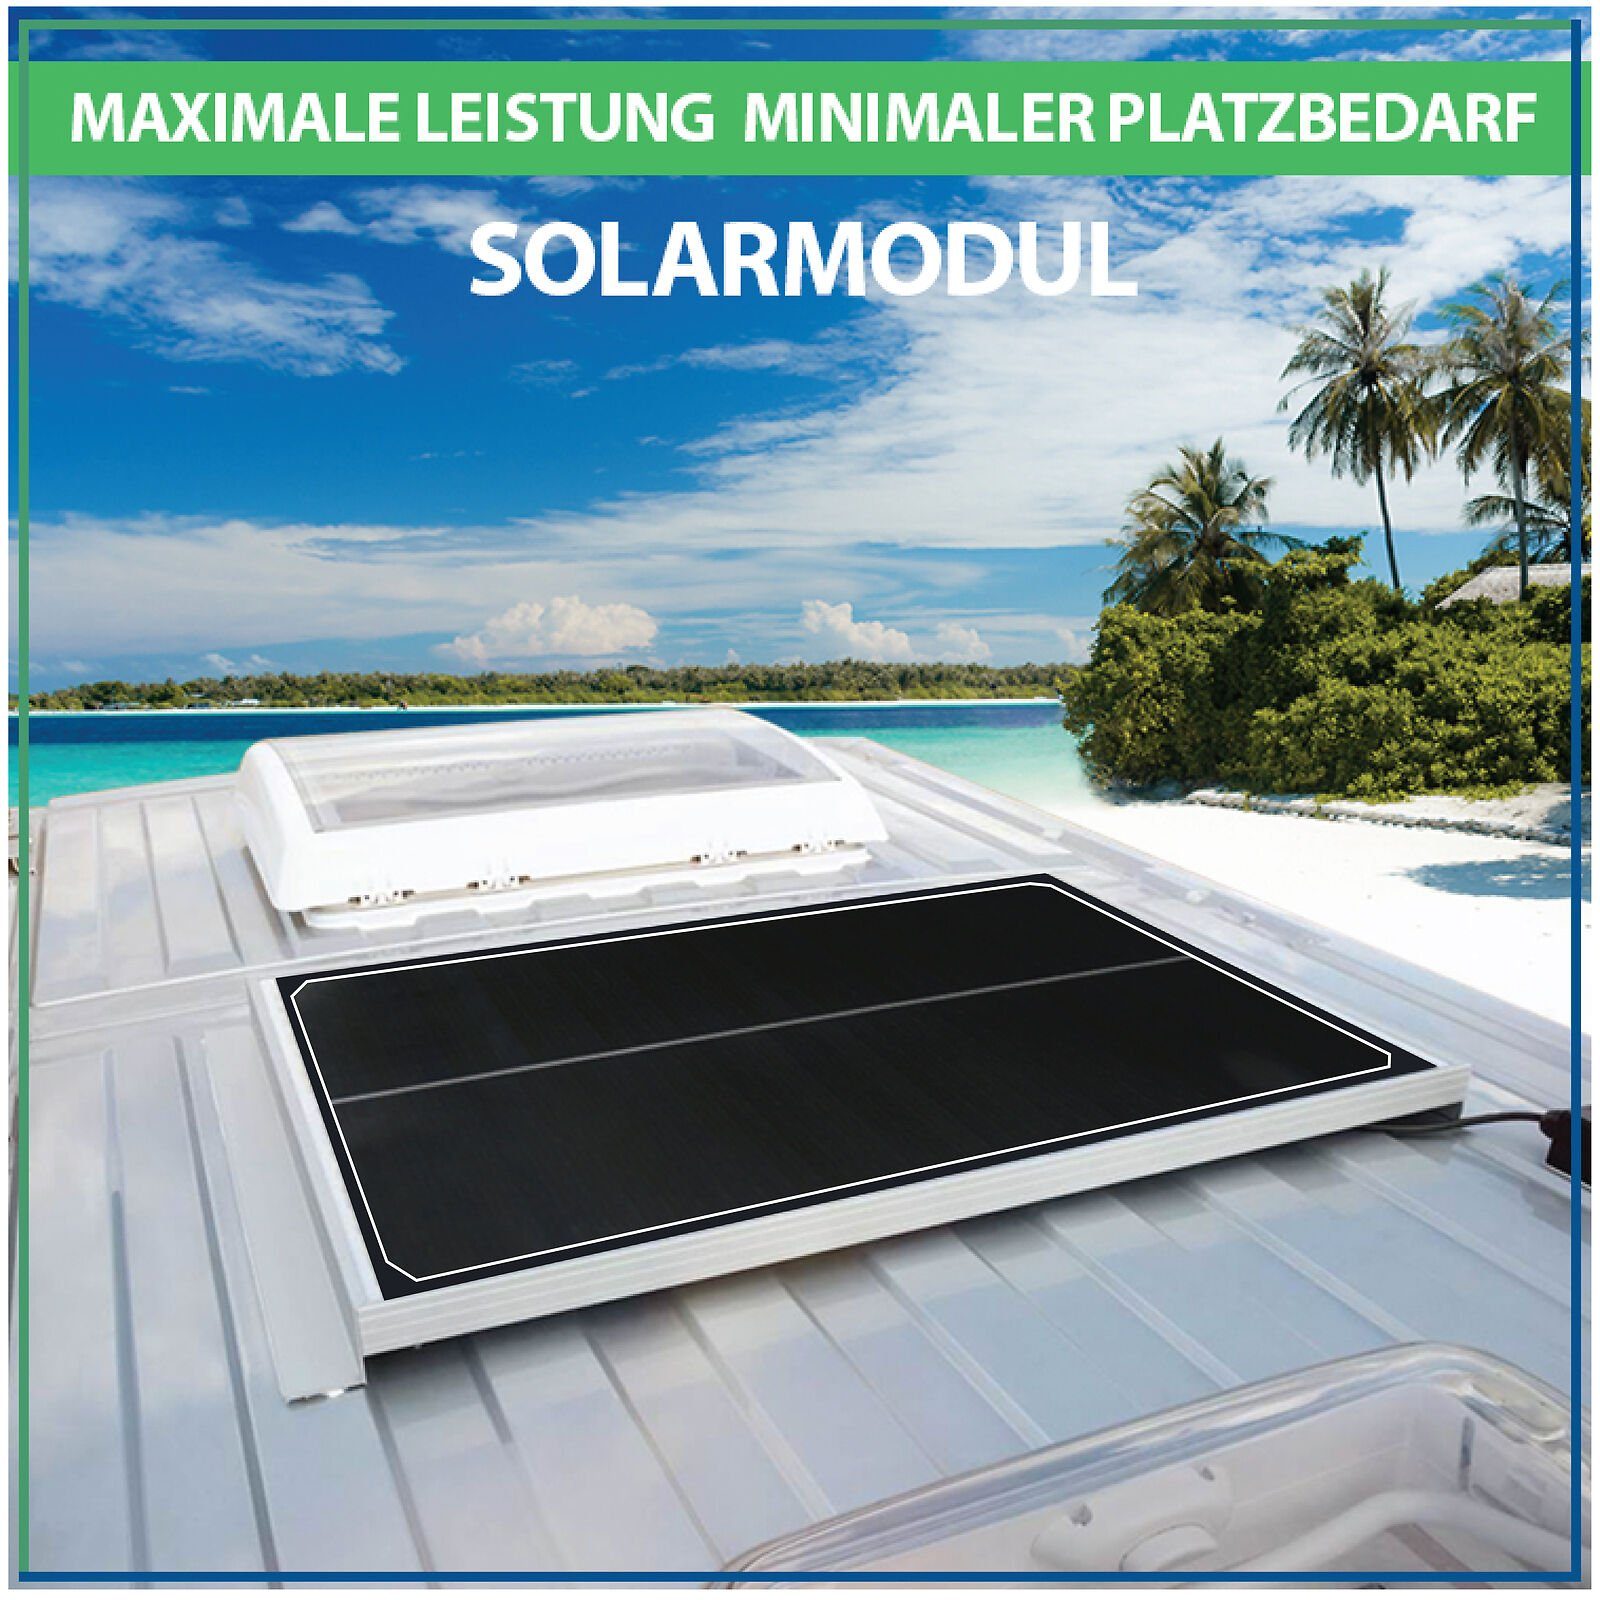 Campergold Solaranlage Solarpanel Solarmodul 12V, & Photovoltaik Camper, cm Wohnwagen für Solarmodul Schwarz Wohnmobile Rahmen-46 Monokristallines 2x100W